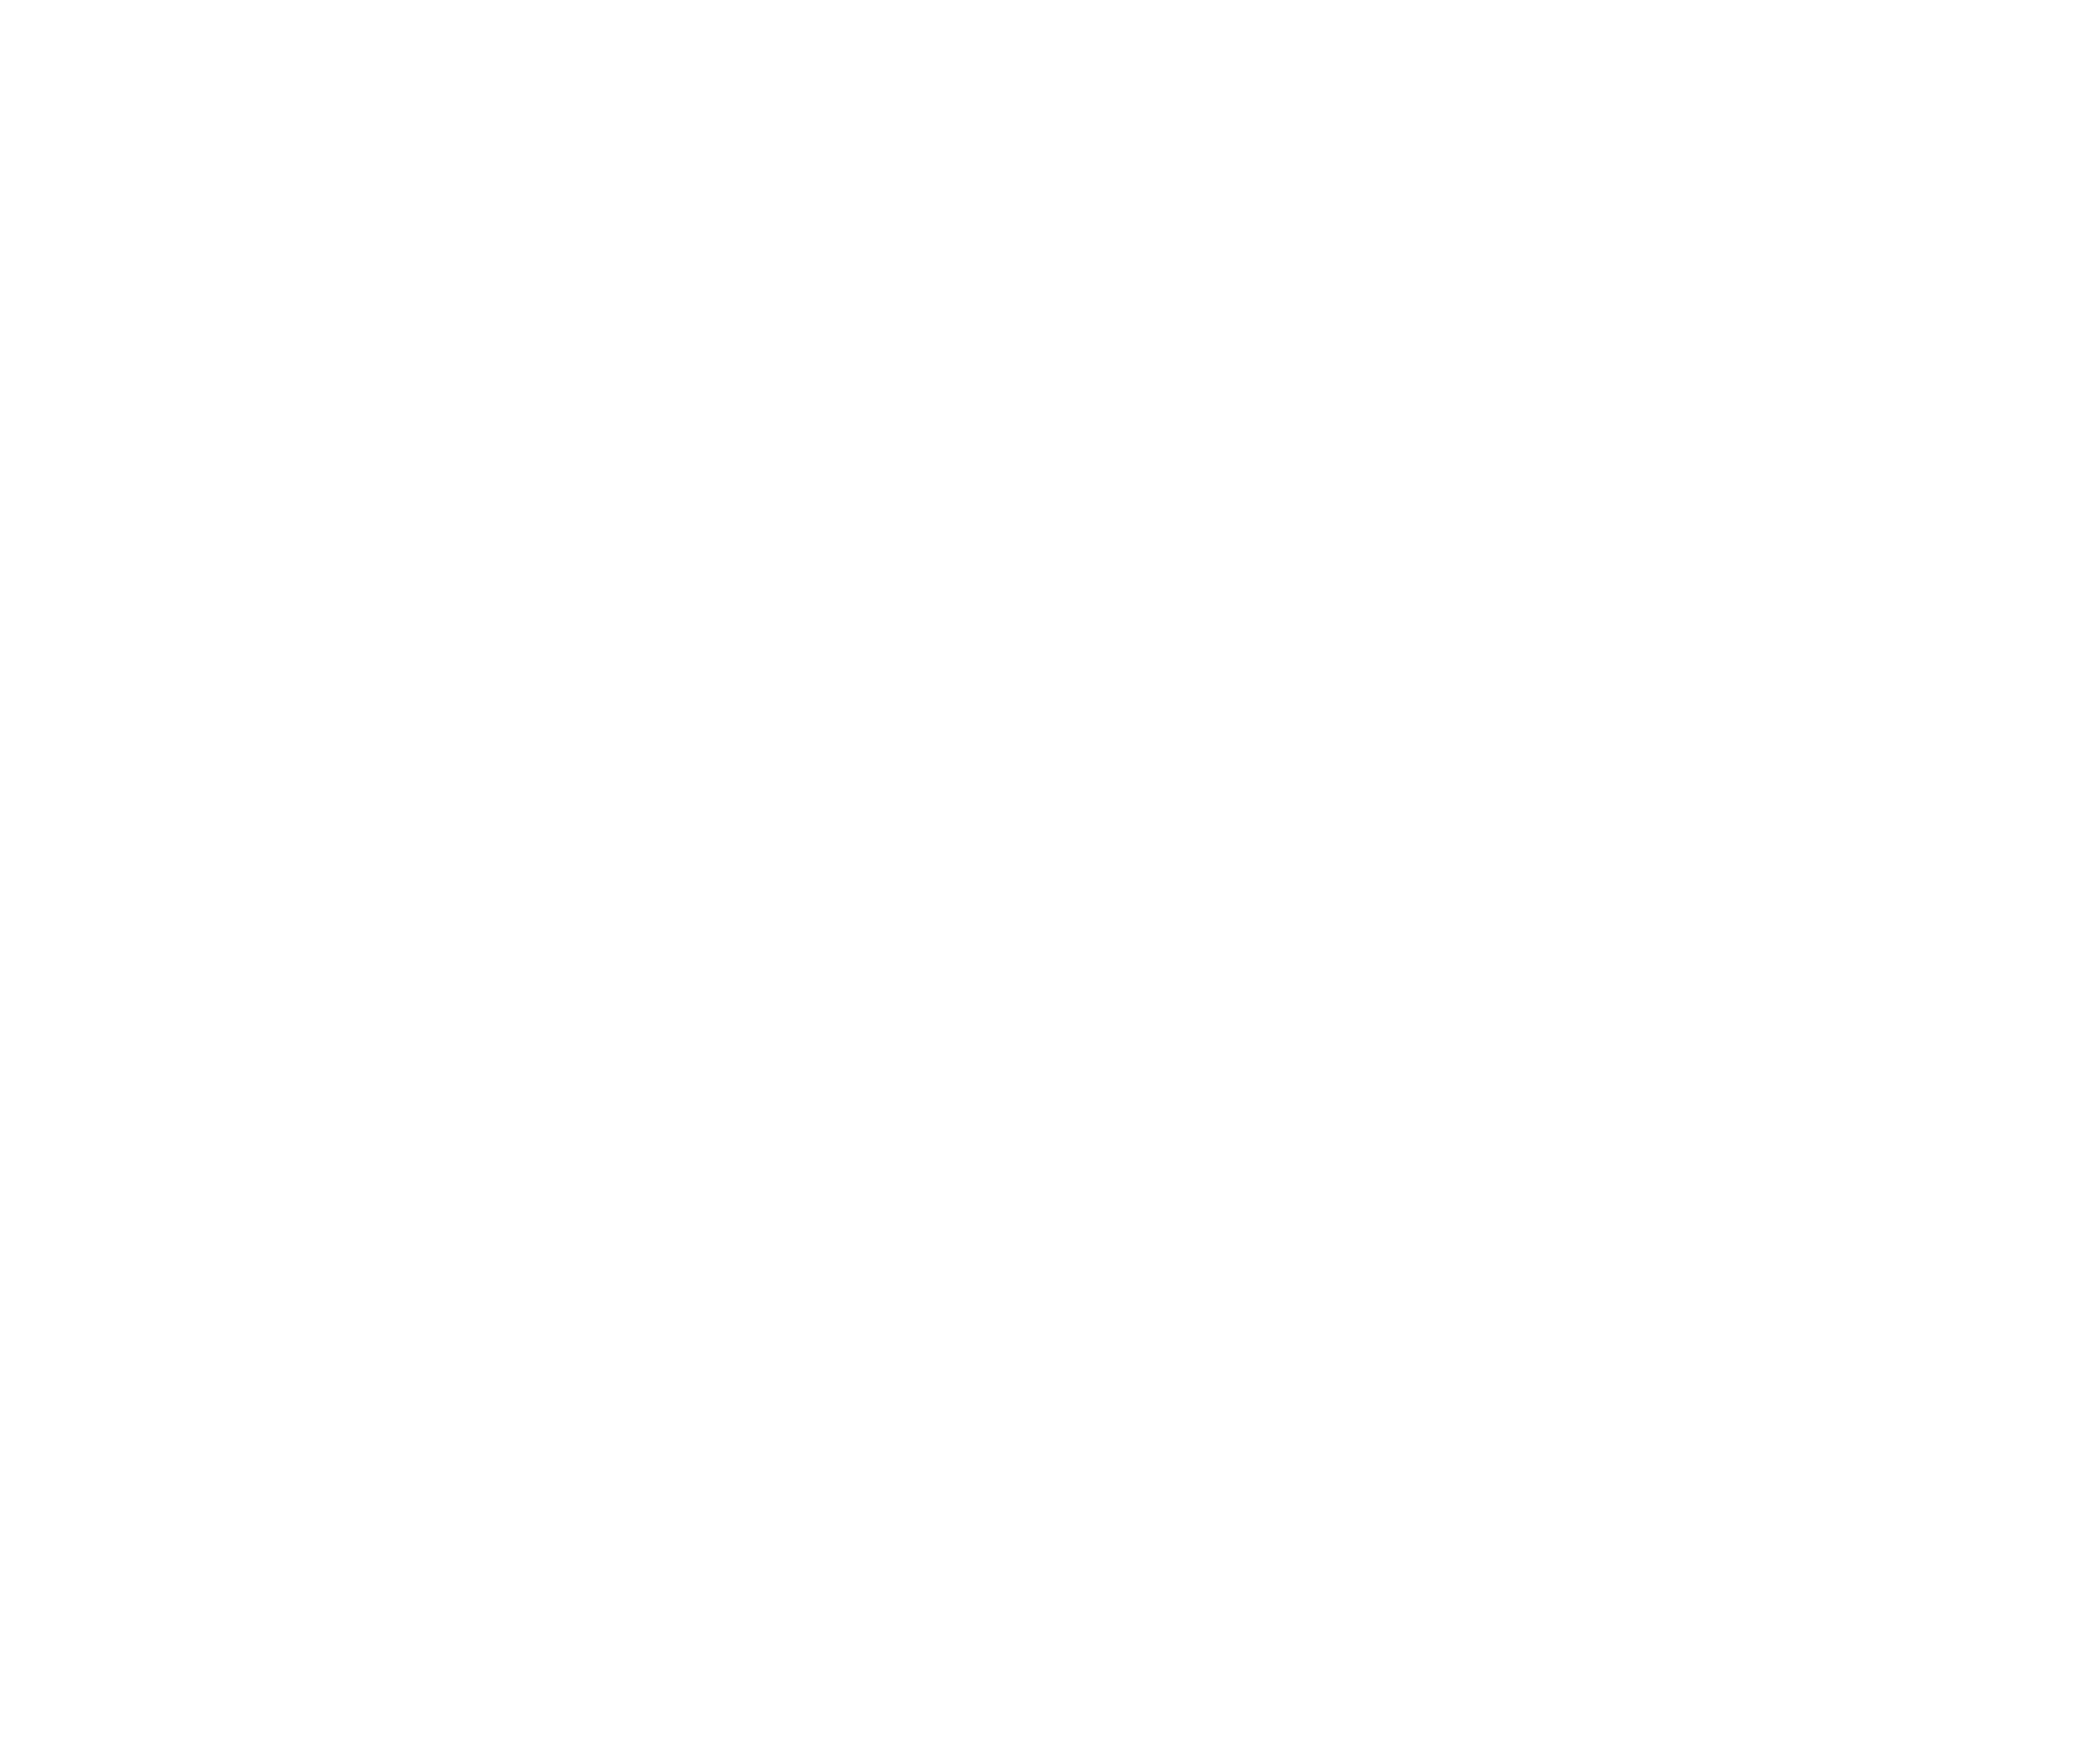 Turfcare Australia